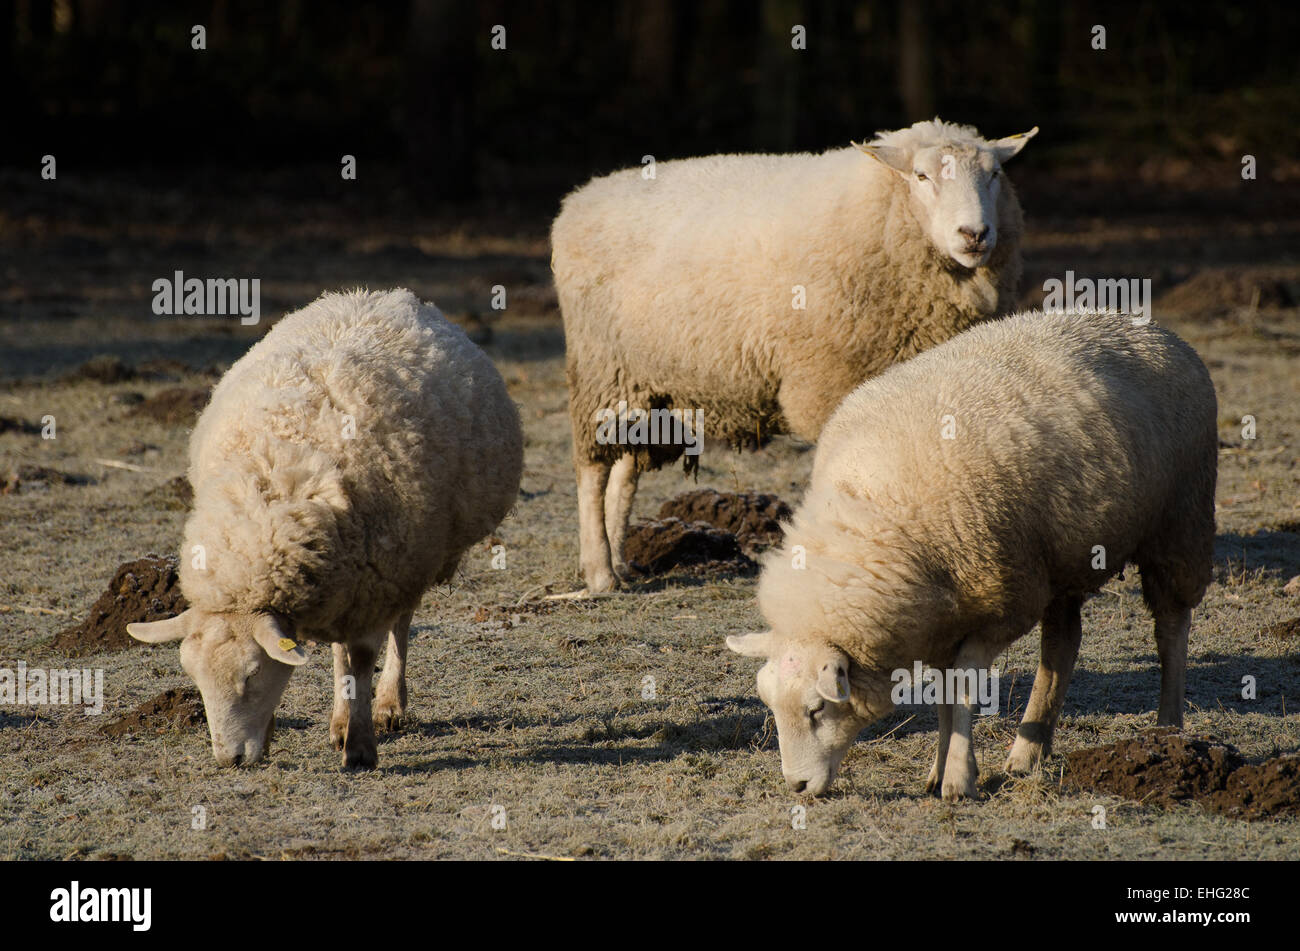 Three sheeps Stock Photo